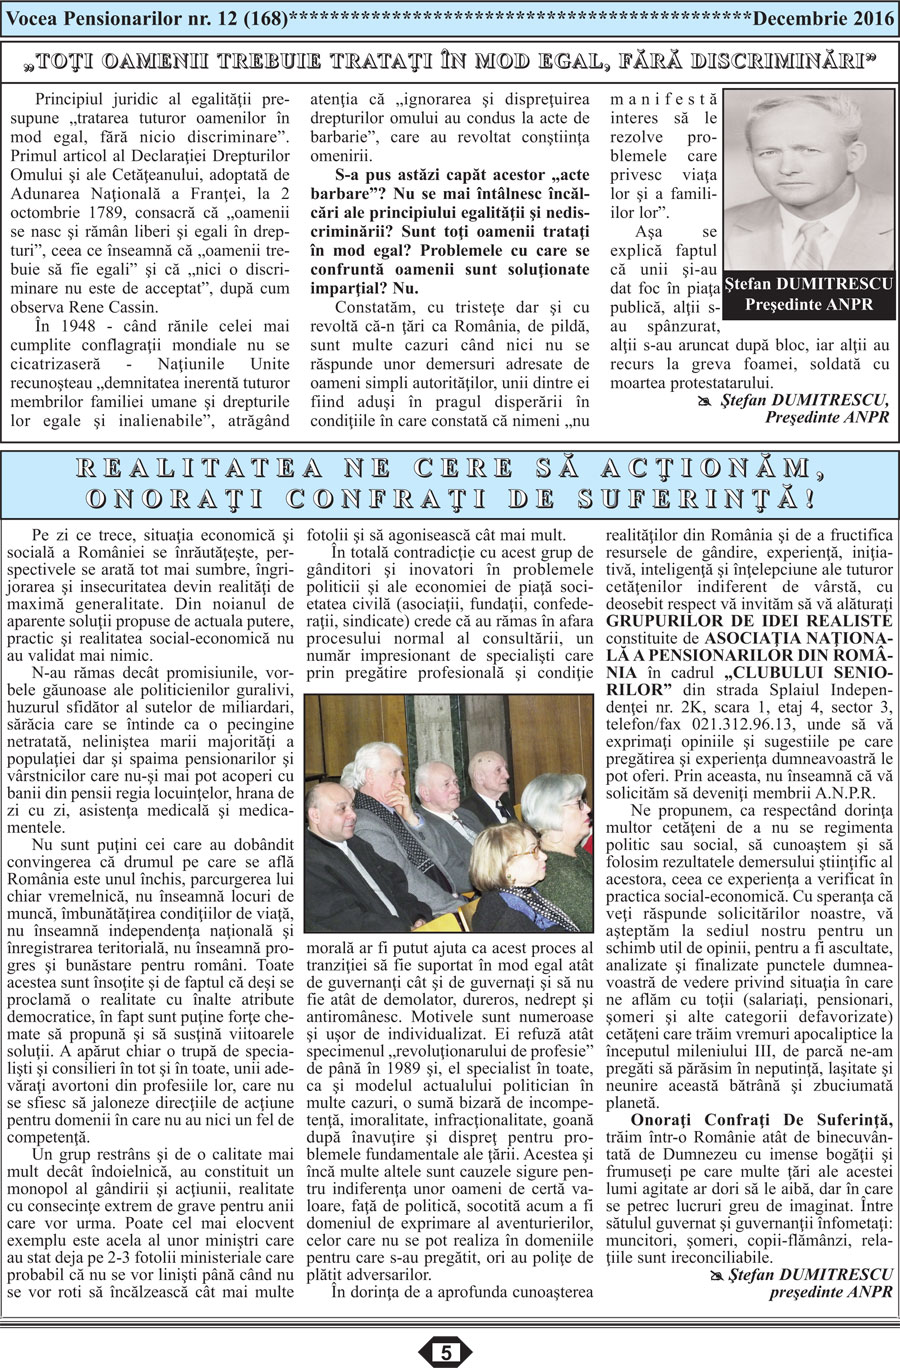 Ziar Vocea Pensionarilor luna decembrie 2016 publicatie ANPR